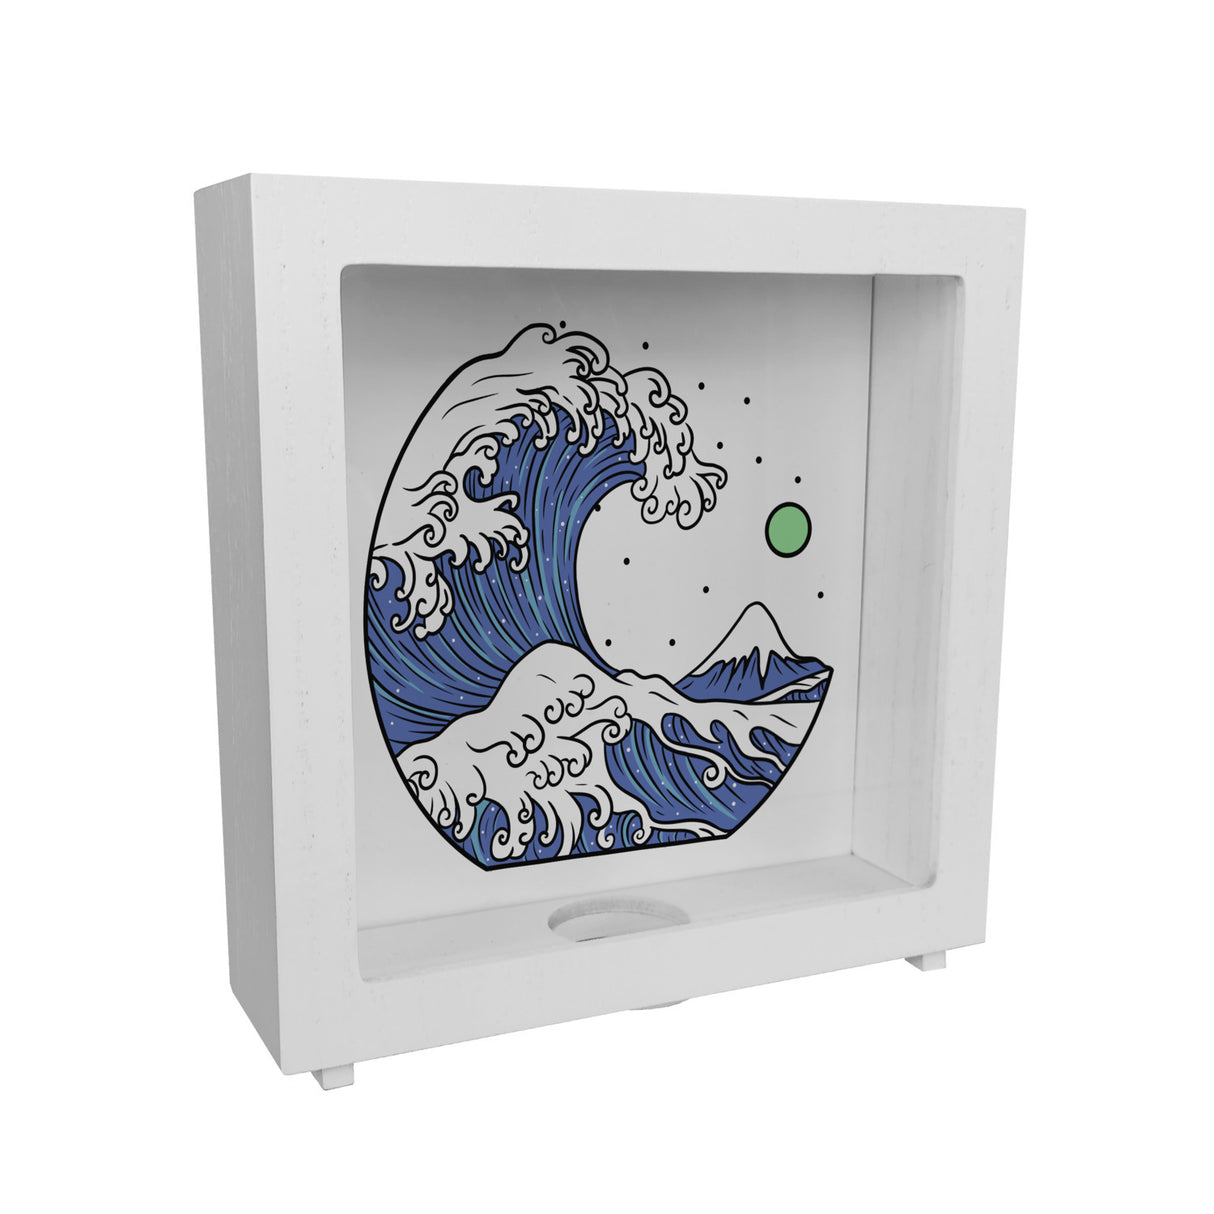 Spardose mit Wellen Motiv - Urlaubskasse aus Keramik mit schönem Meer Design